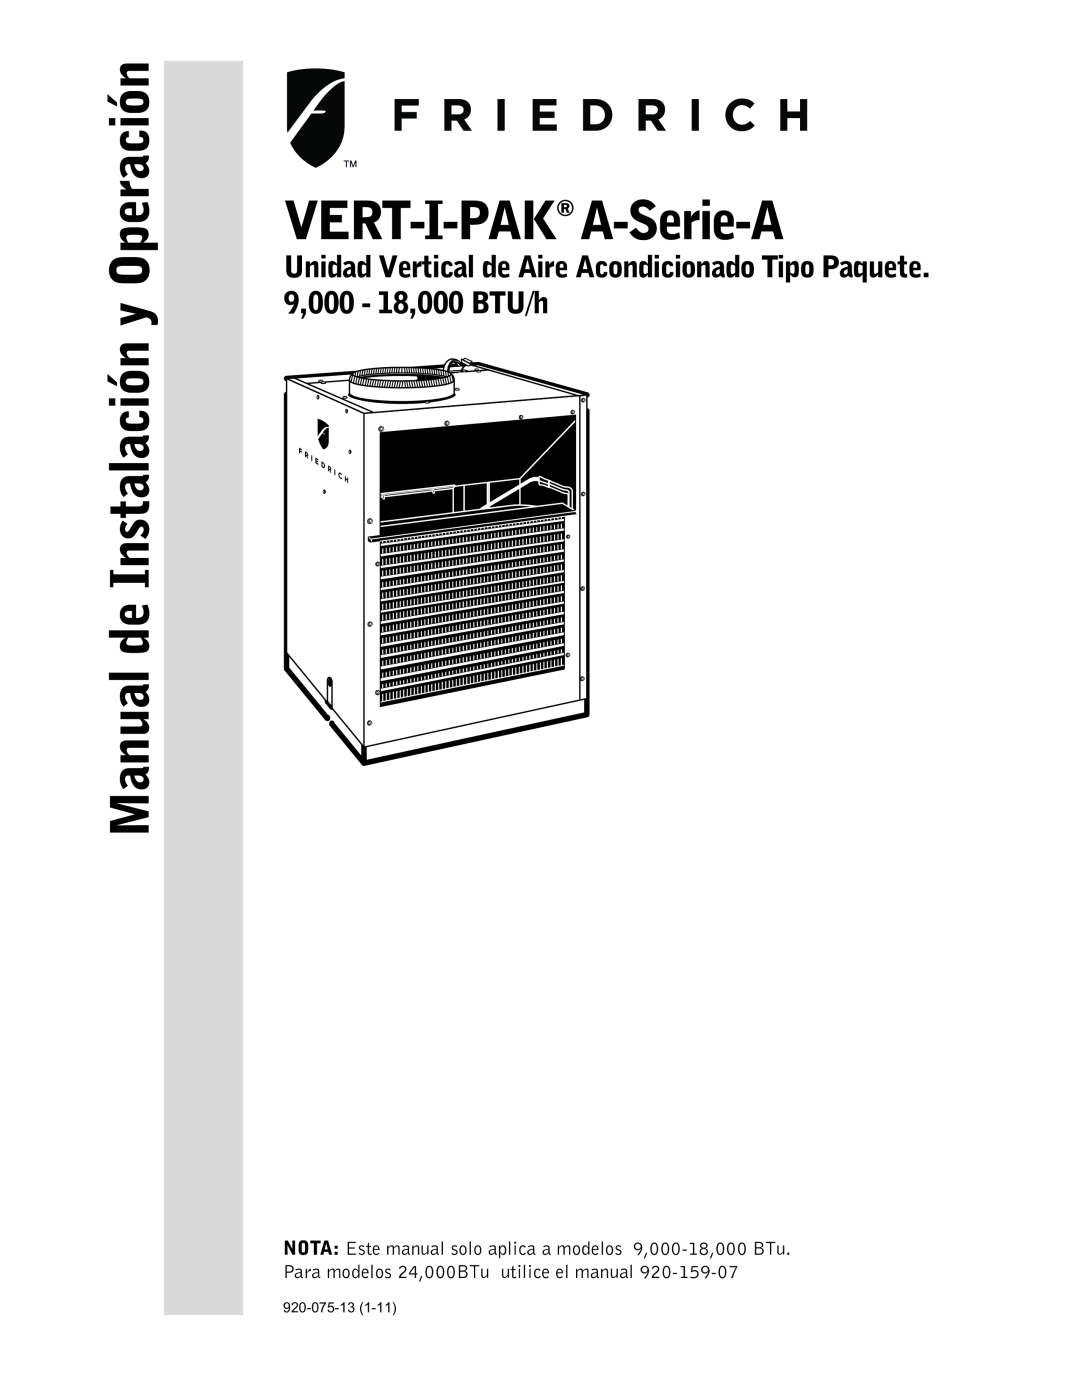 Friedrich 920-075-13 (1-11) operation manual VERT-I-PAK A-Serie-A, Manual de Instalación y Operación 